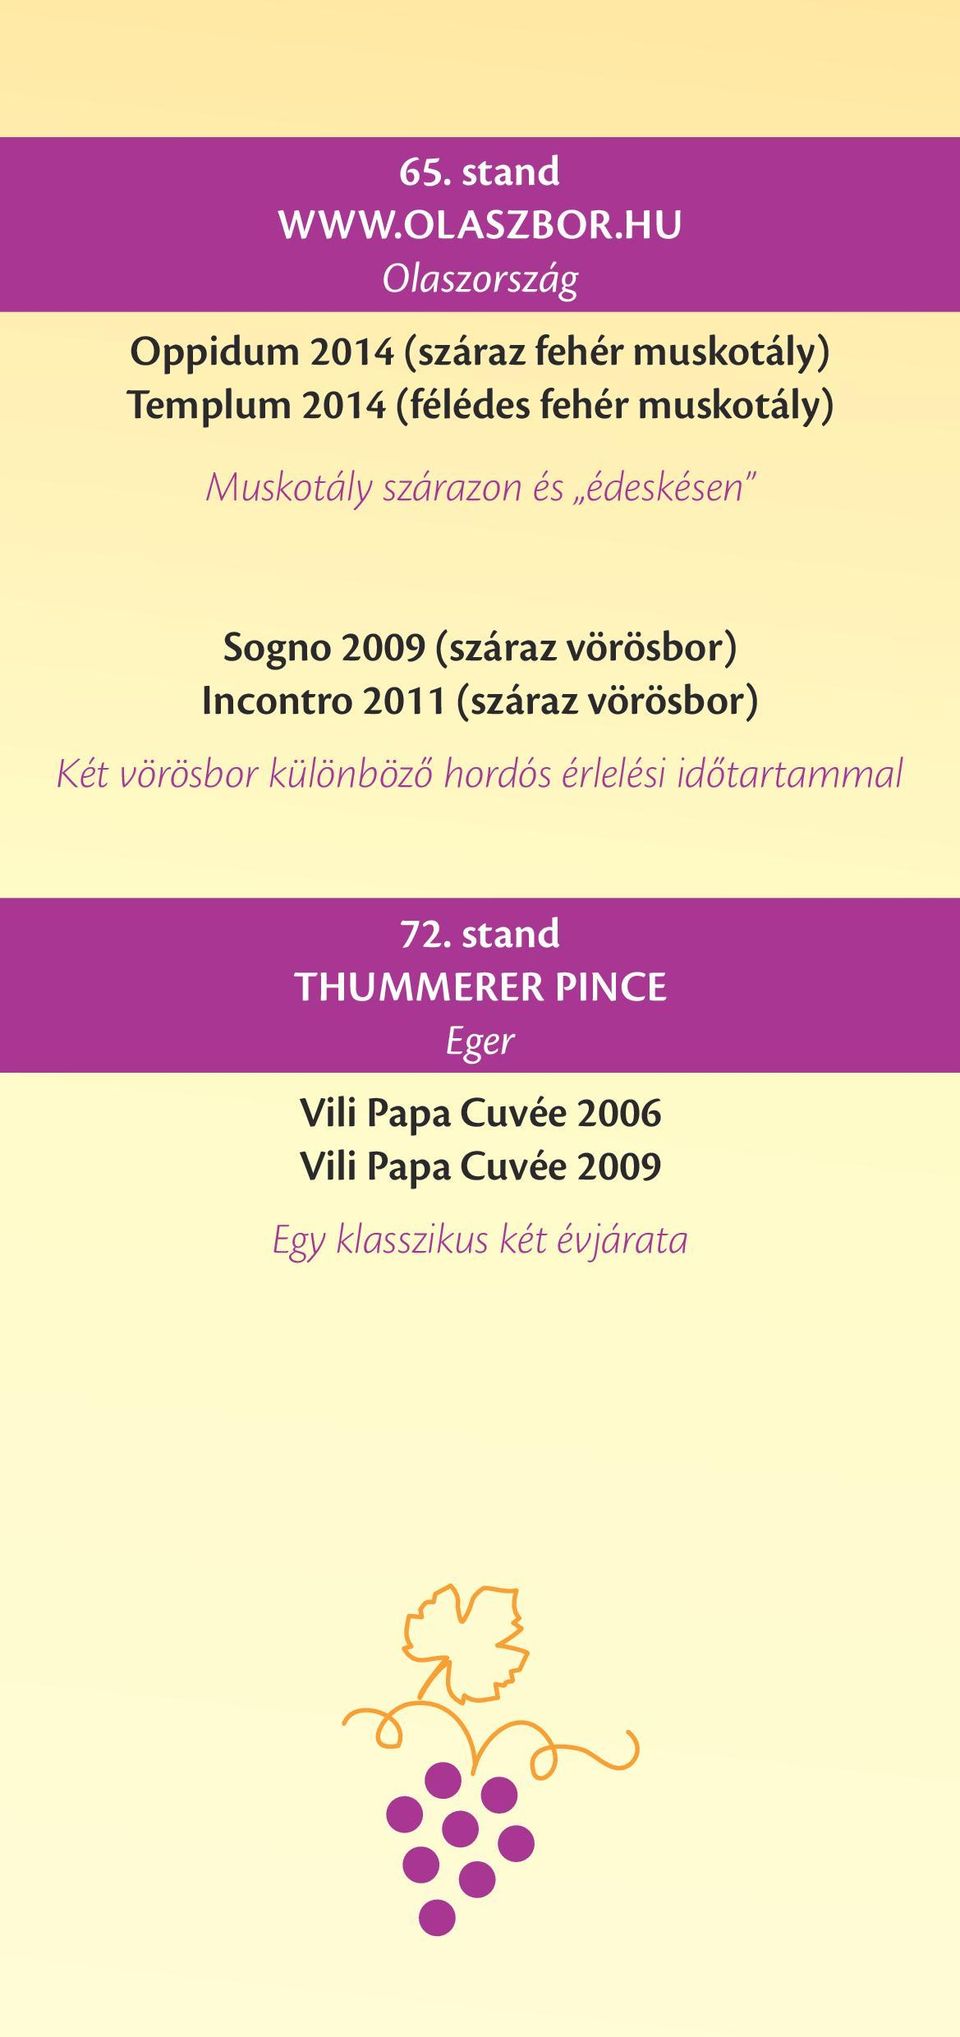 muskotály) Muskotály szárazon és édeskésen Sogno 2009 (száraz vörösbor) Incontro 2011